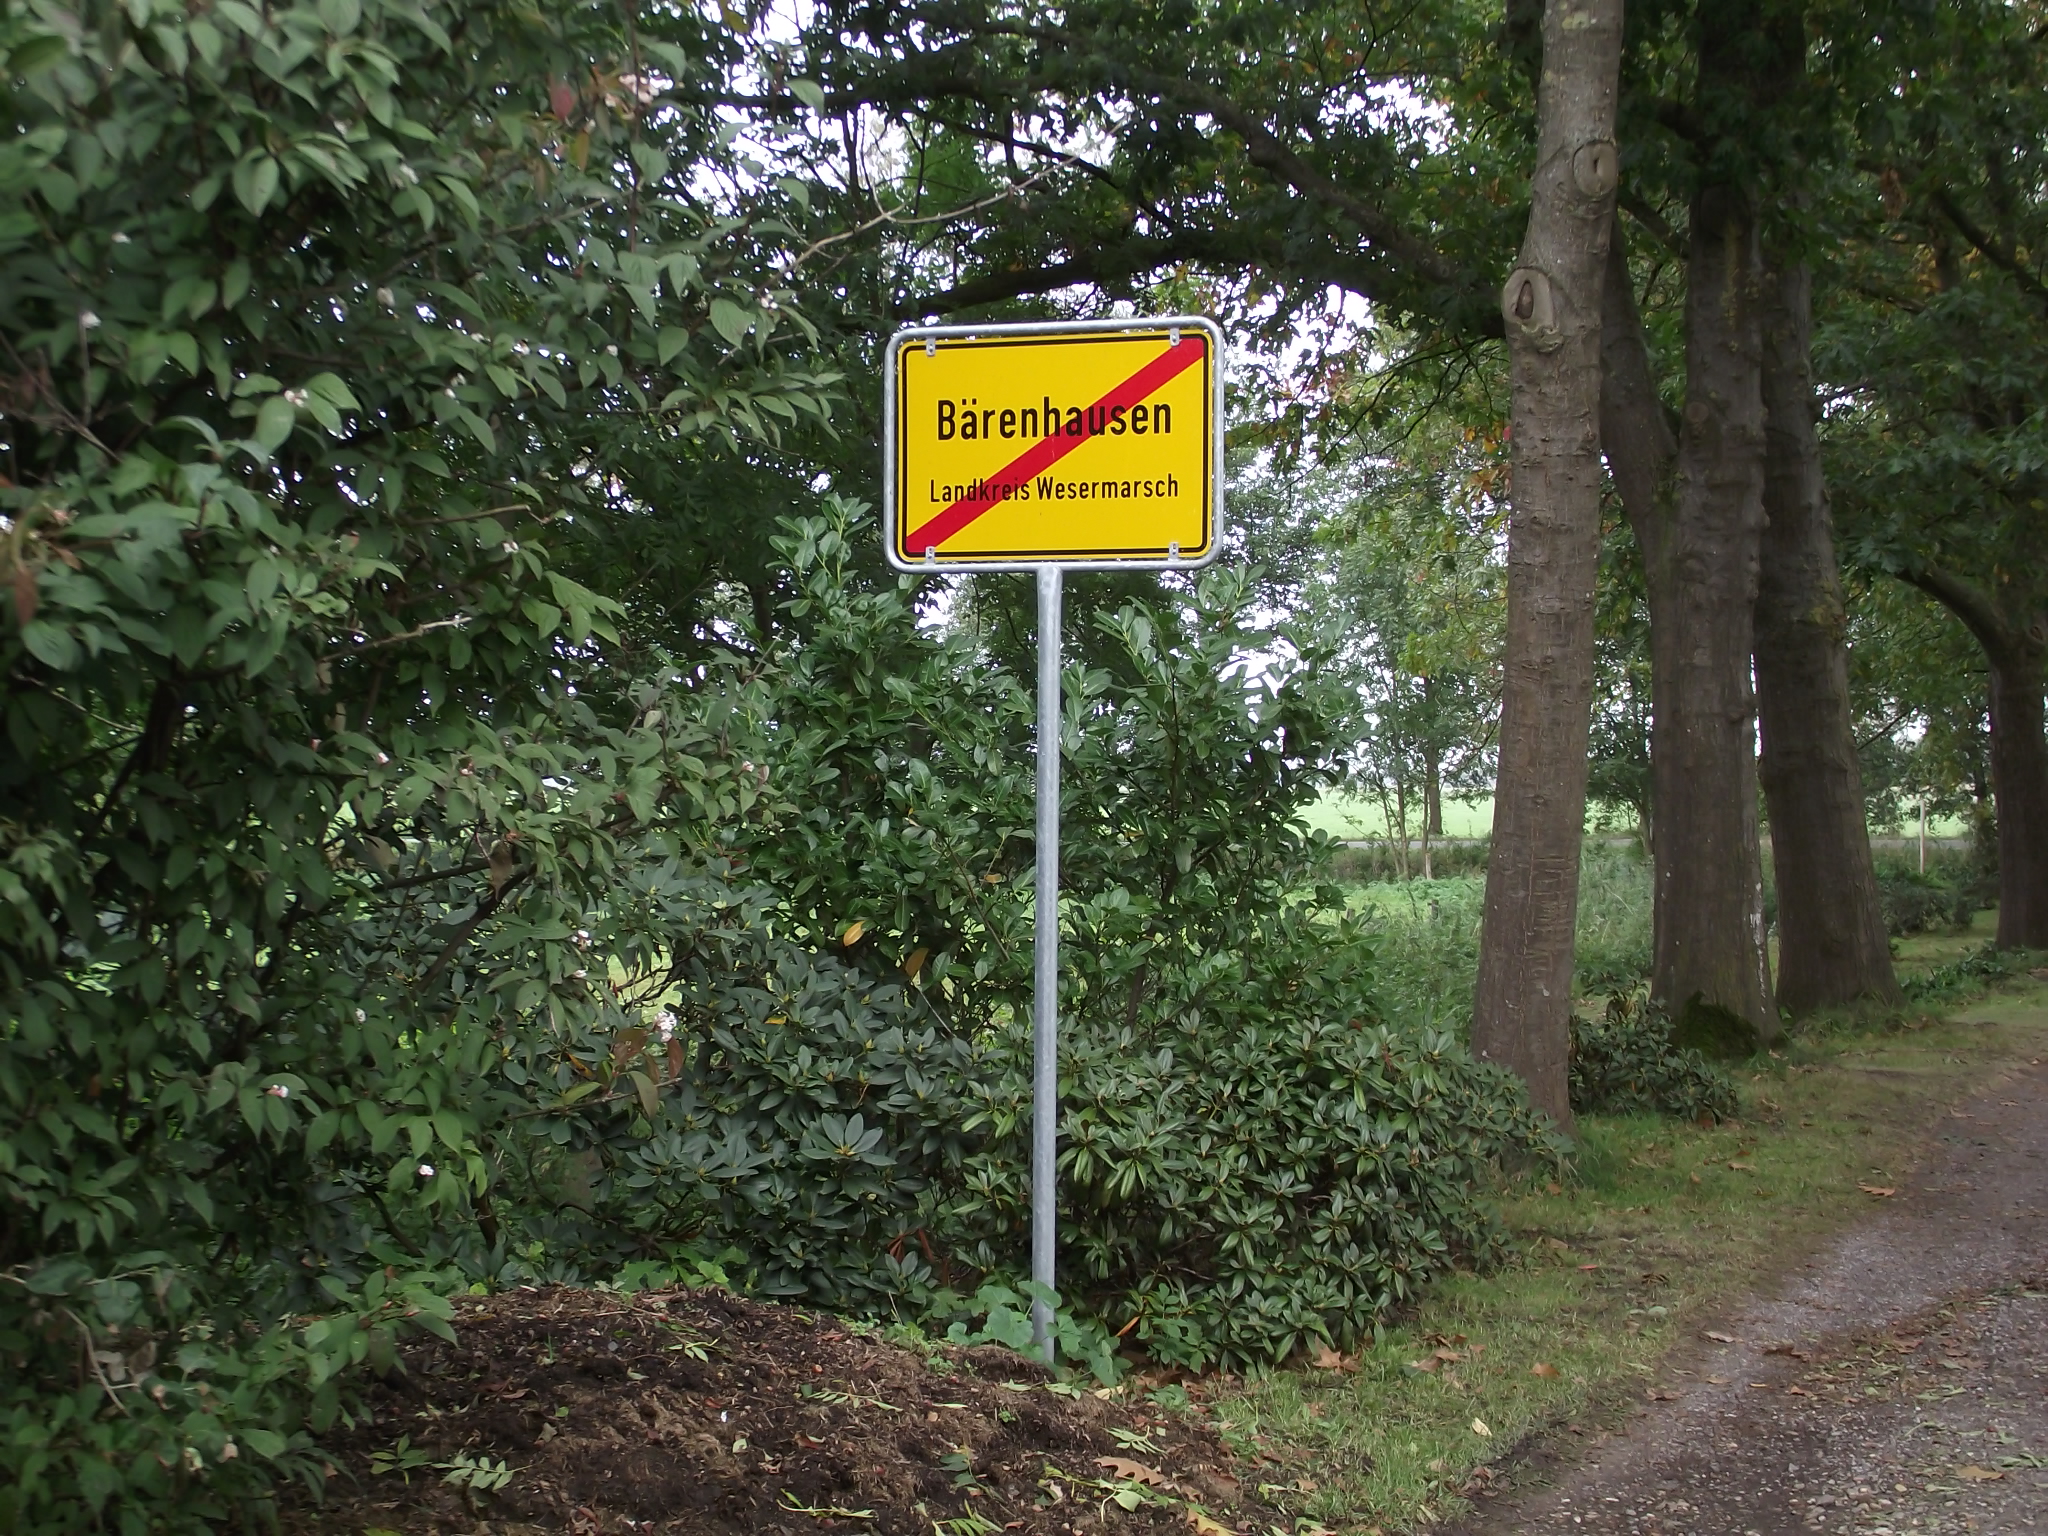 Location Nr 9 Das &quot;ARBORETUM in Neuenkoop/Berne&quot;- Und Tschüss bei 2012 - dann bekomme ich auch die Sache mit dem Ortsschild an der Zufahrt heraus! *gg*